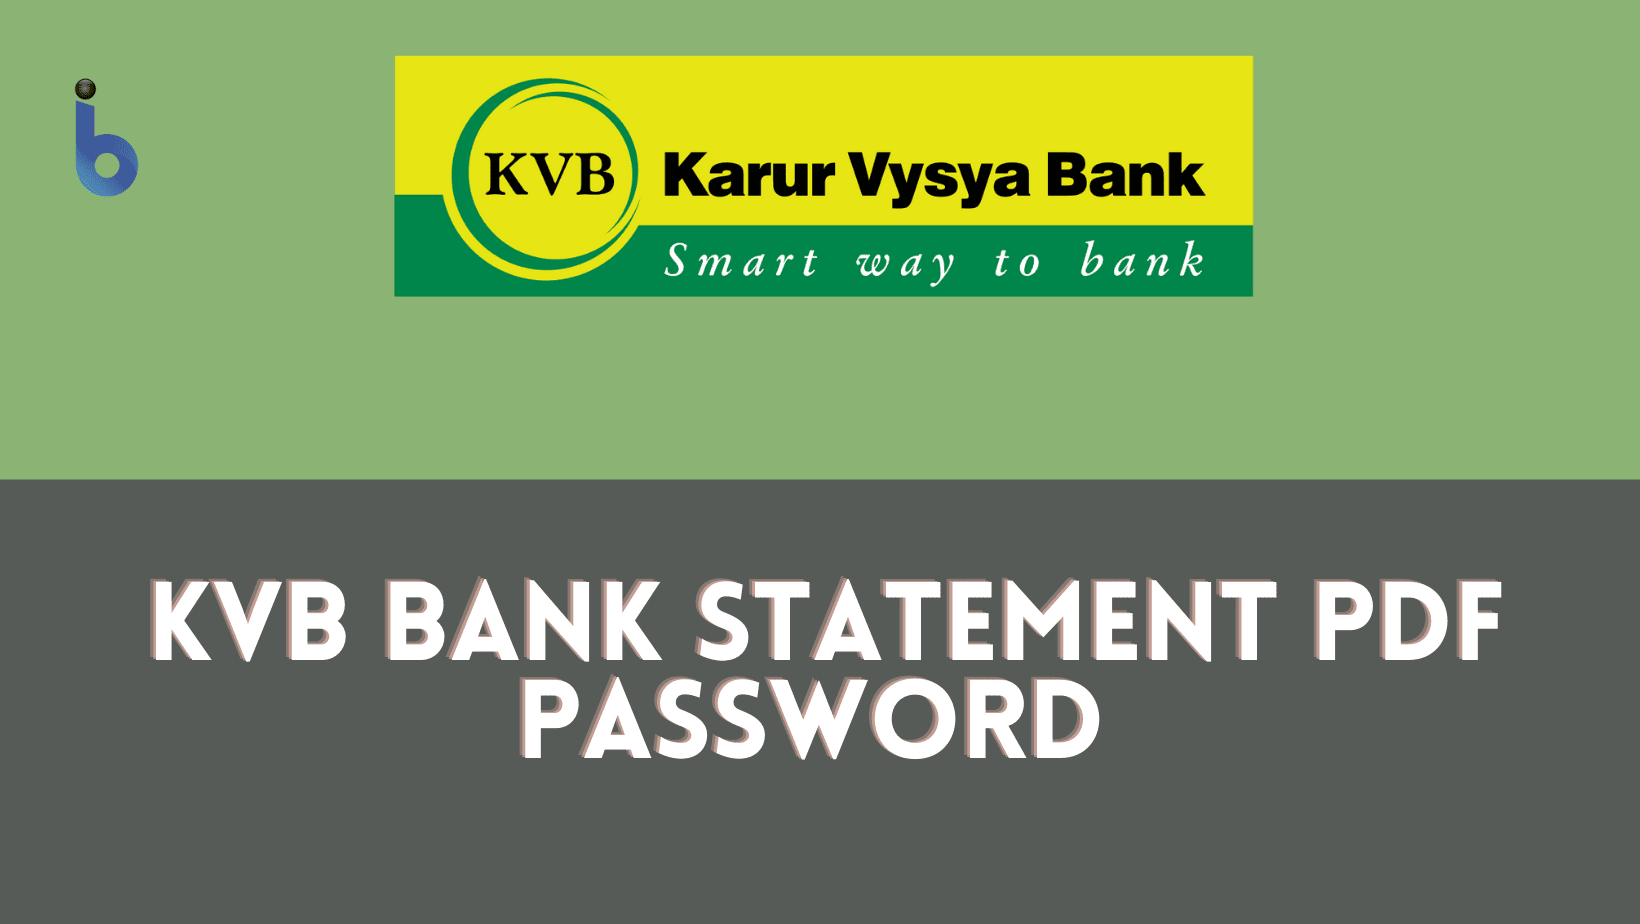 T-shirt KVB | Karur Vysya Bank